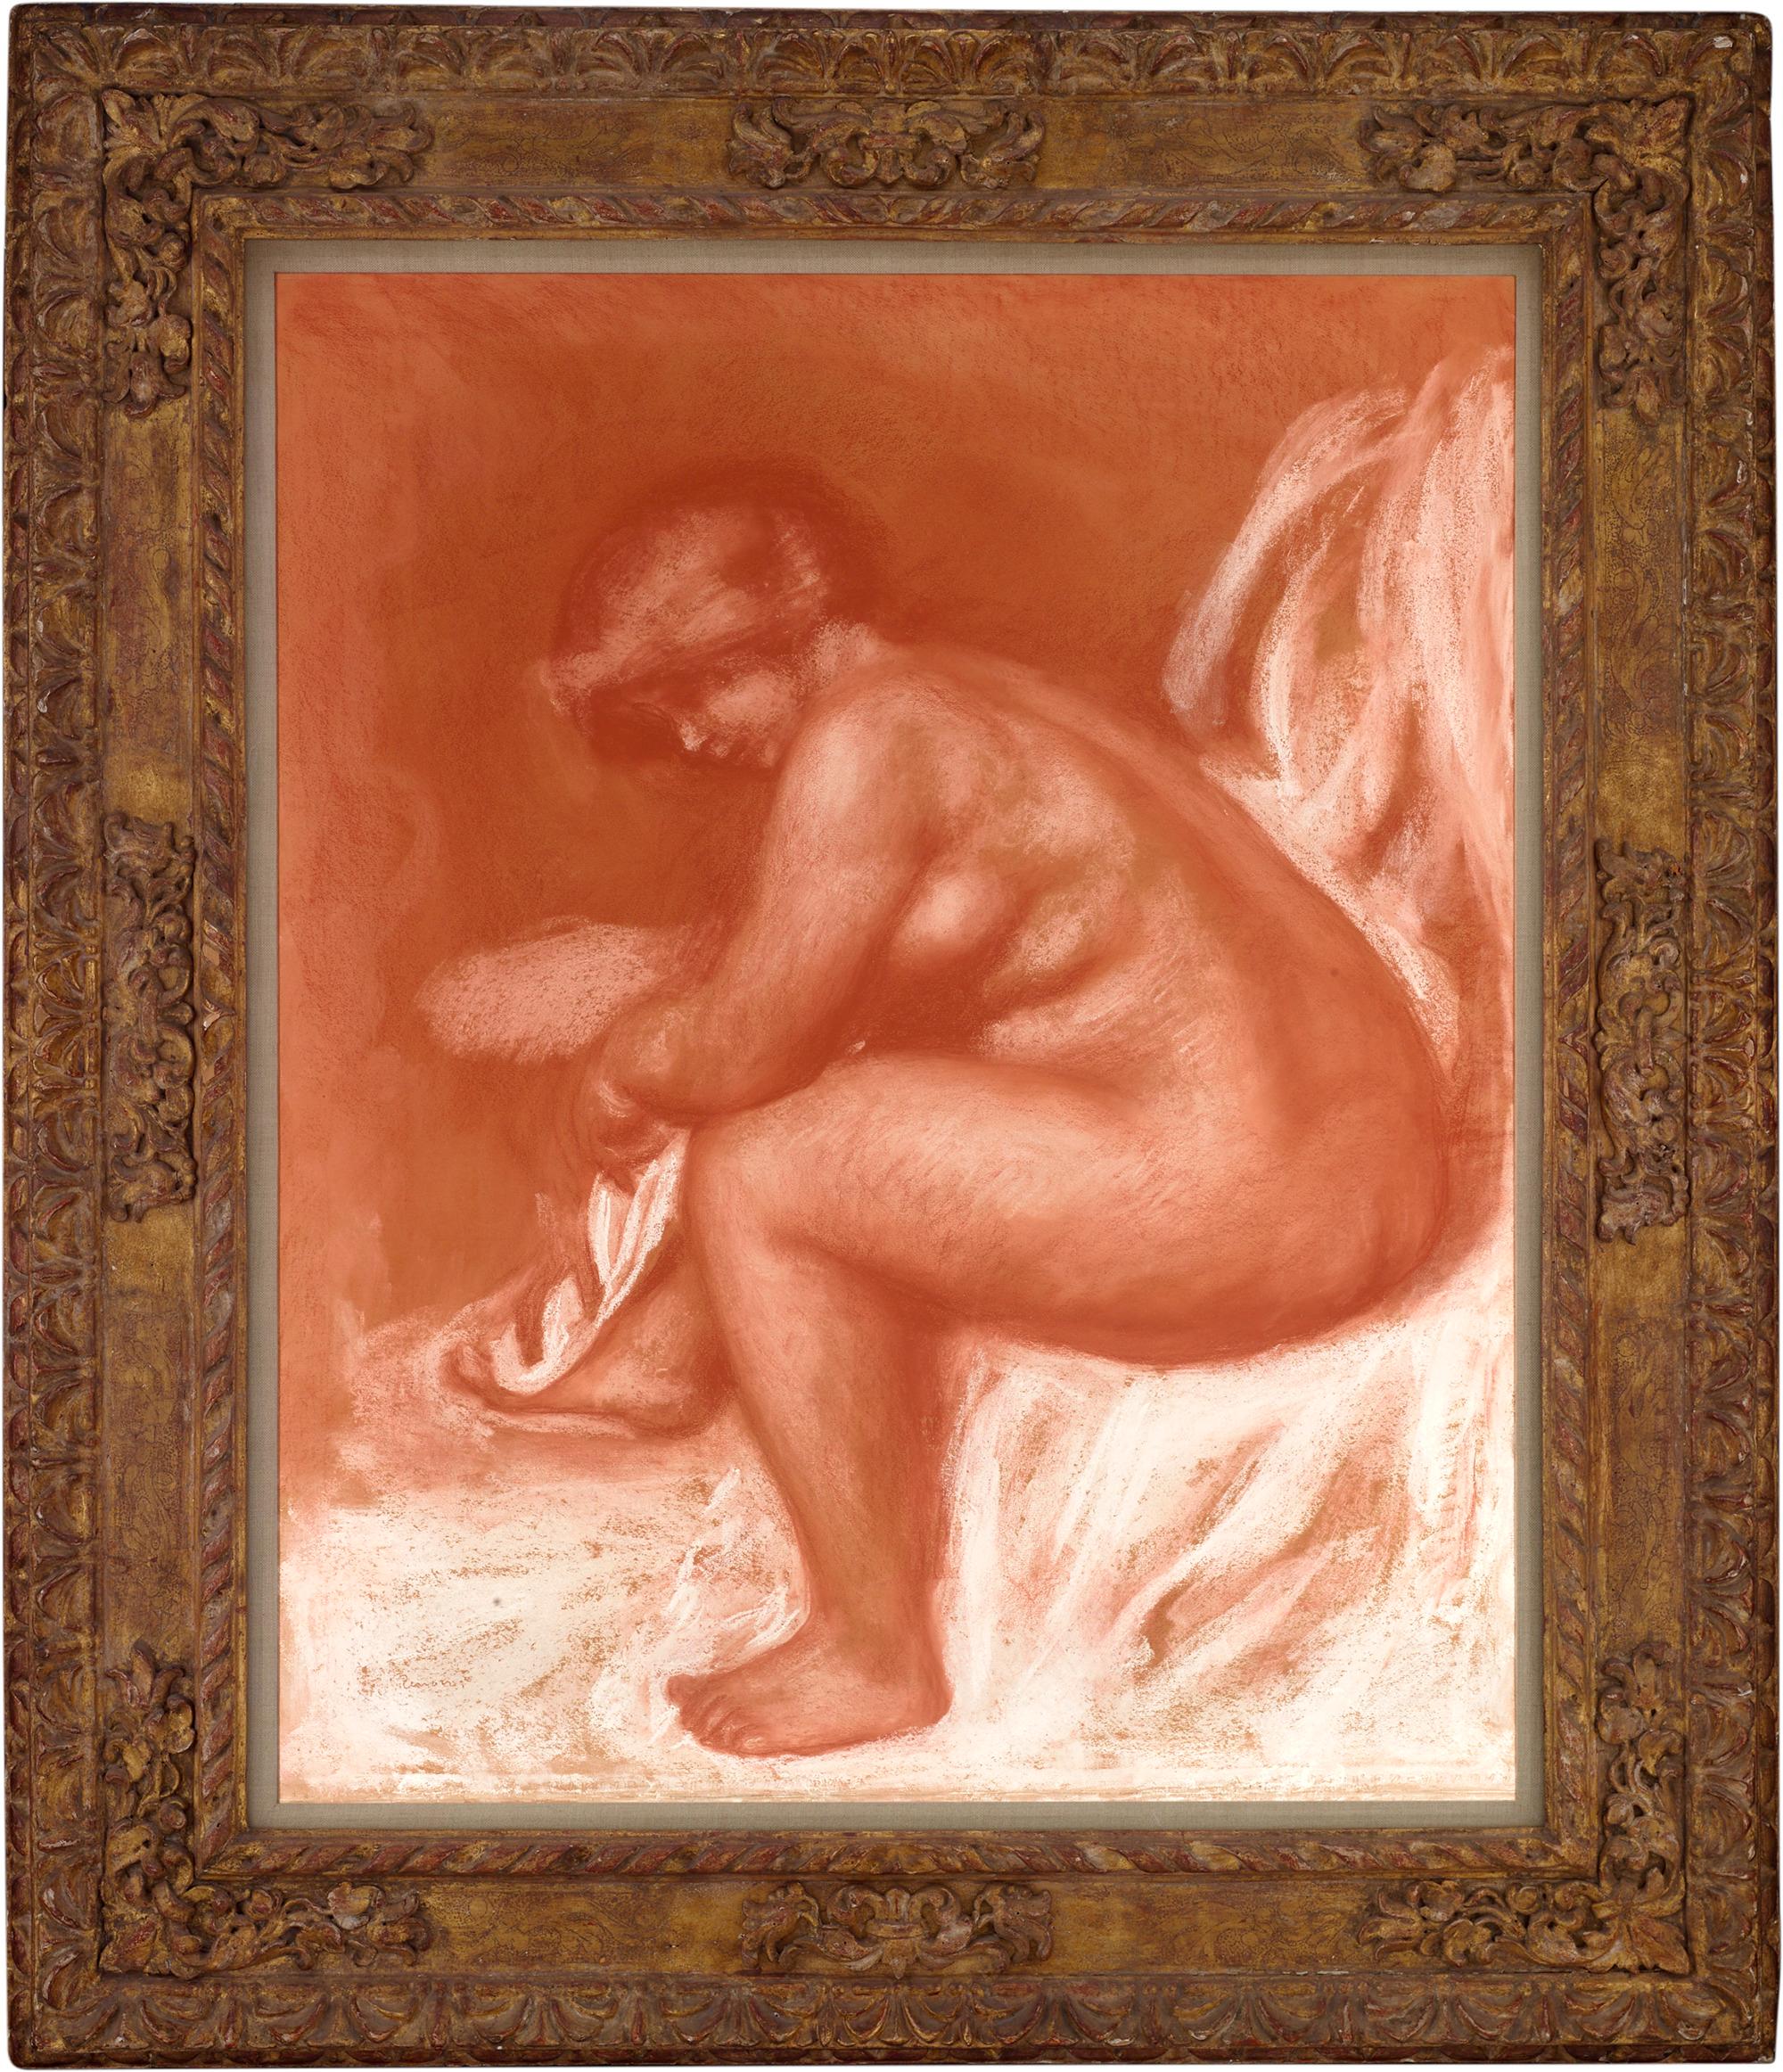 Après le bain (After the bath) - Painting by Pierre Auguste Renoir